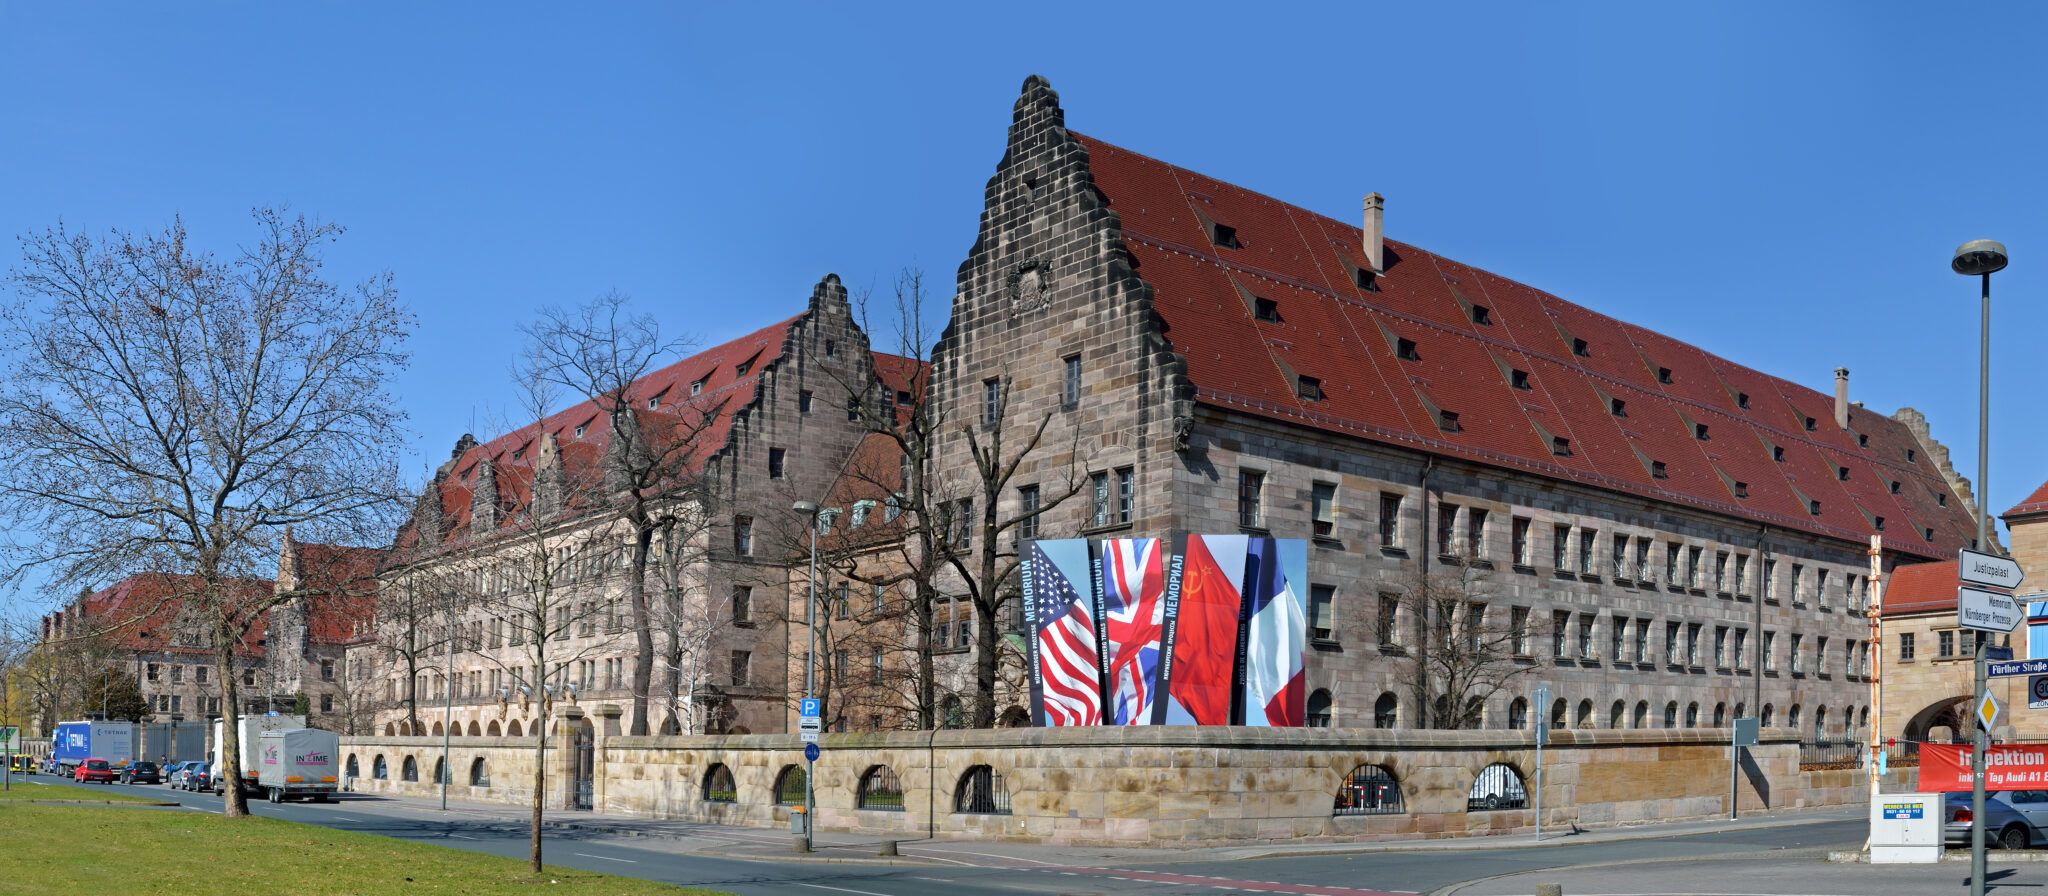 Het Paleis van Justitie in Neurenberg, waar de processen plaatsvonden. Bron: André Karwath, bron: Wikipedia Commons[